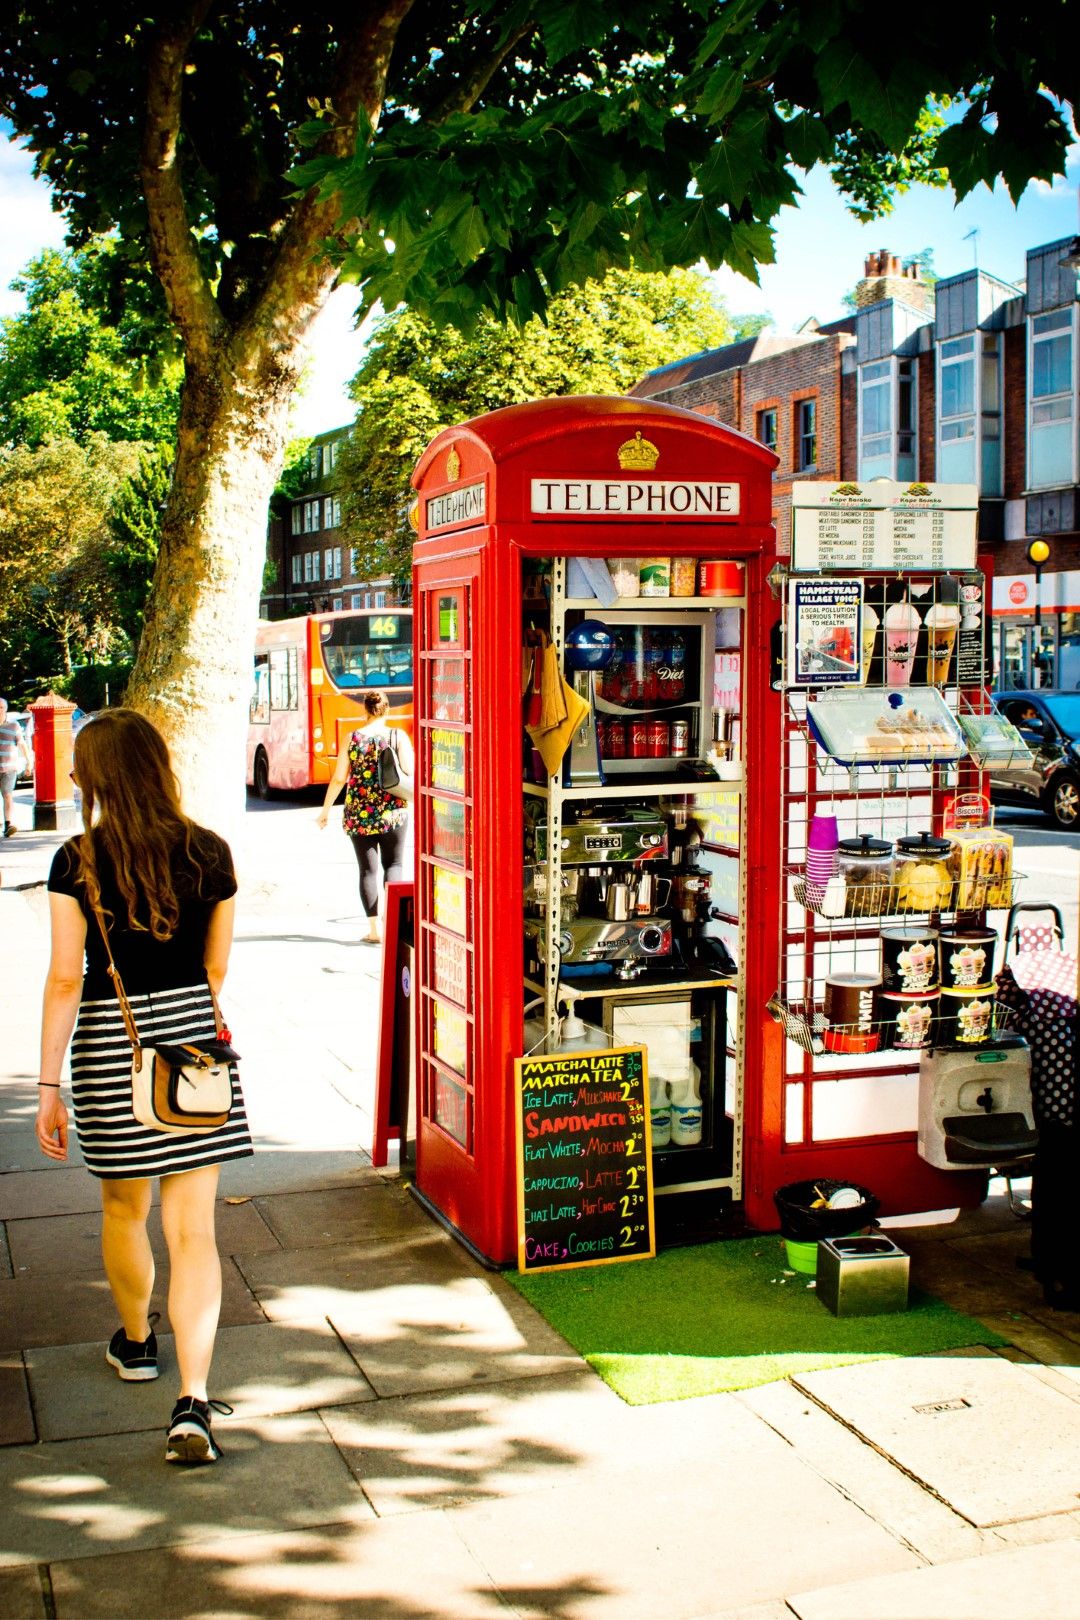 Лондонска телефонна будка, превърната в улично кафене